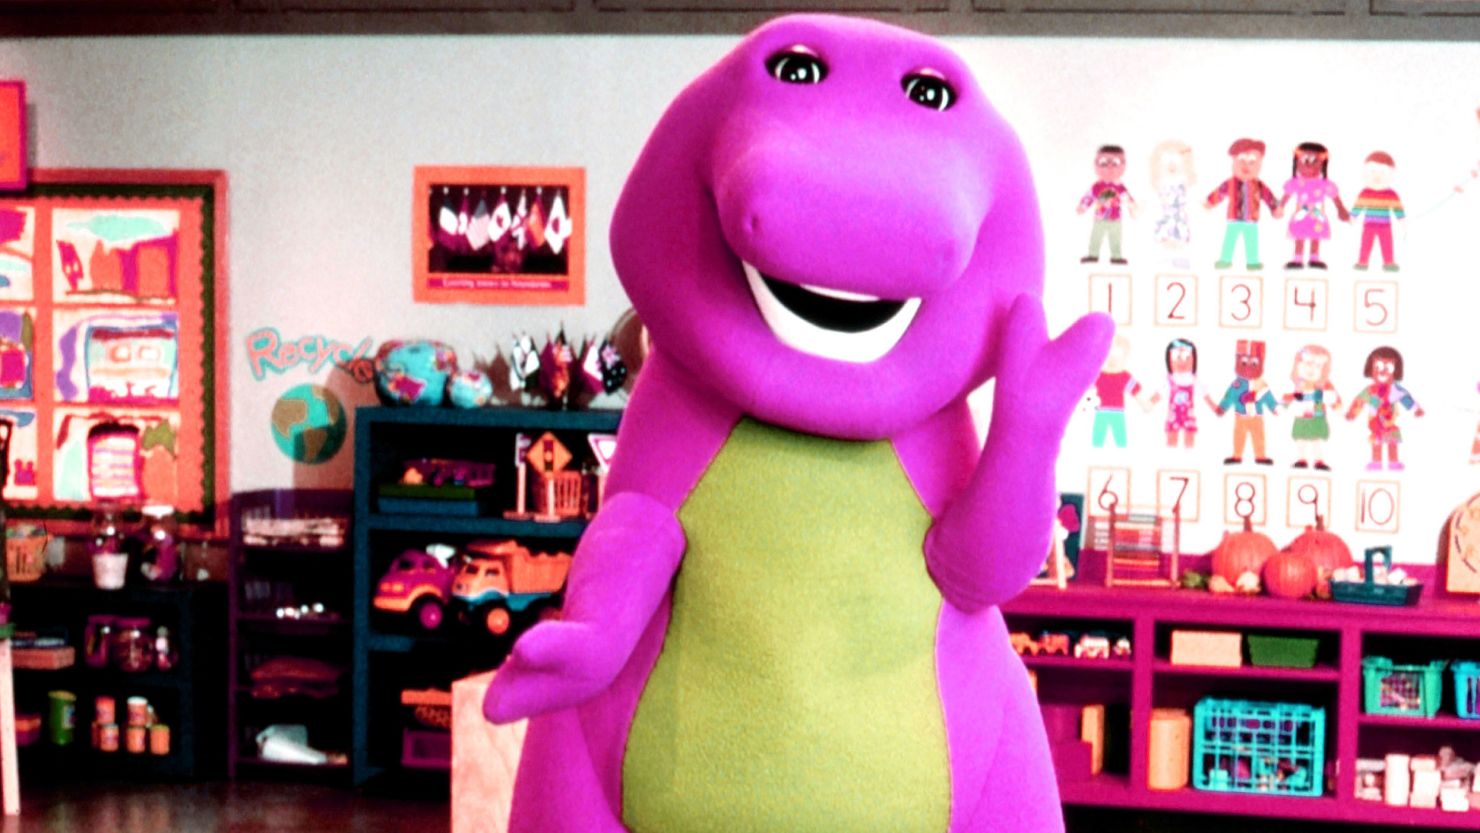 "Barney & Friends" ran from 1992-2009.